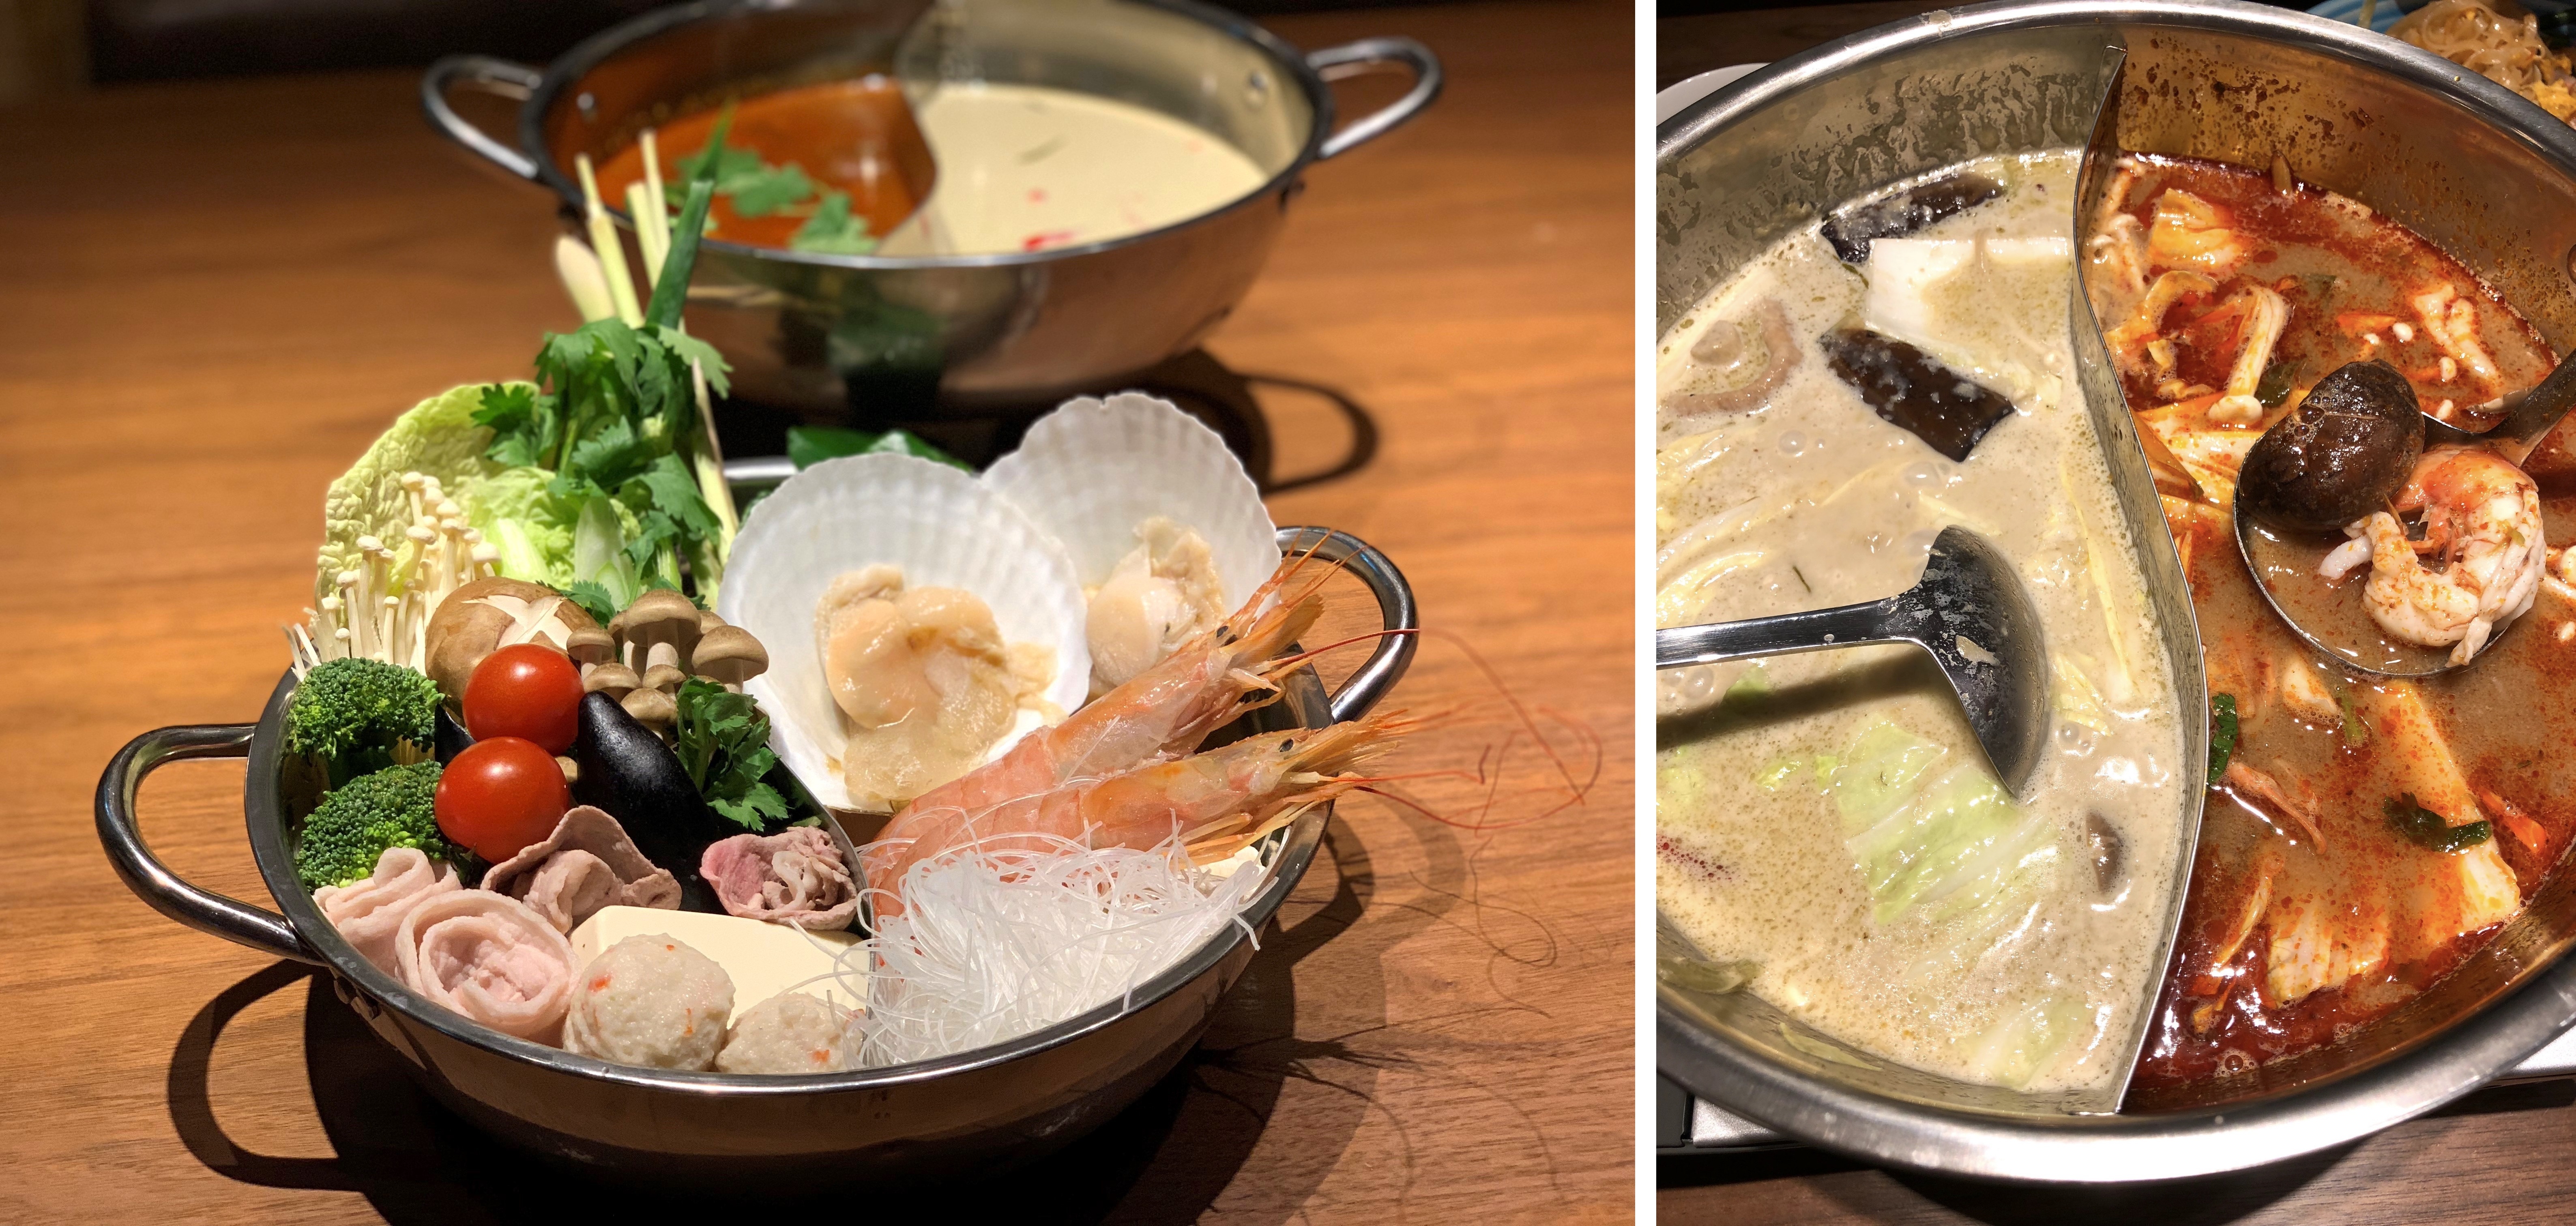 国内初の火鍋風 食べ比べエスニック鍋 を赤坂のタイ料理 ギンカーオ で提供開始 トムヤム鍋とグリーンカレー鍋を一度に堪能 Gin Khao Cafe California Thaiのプレスリリース